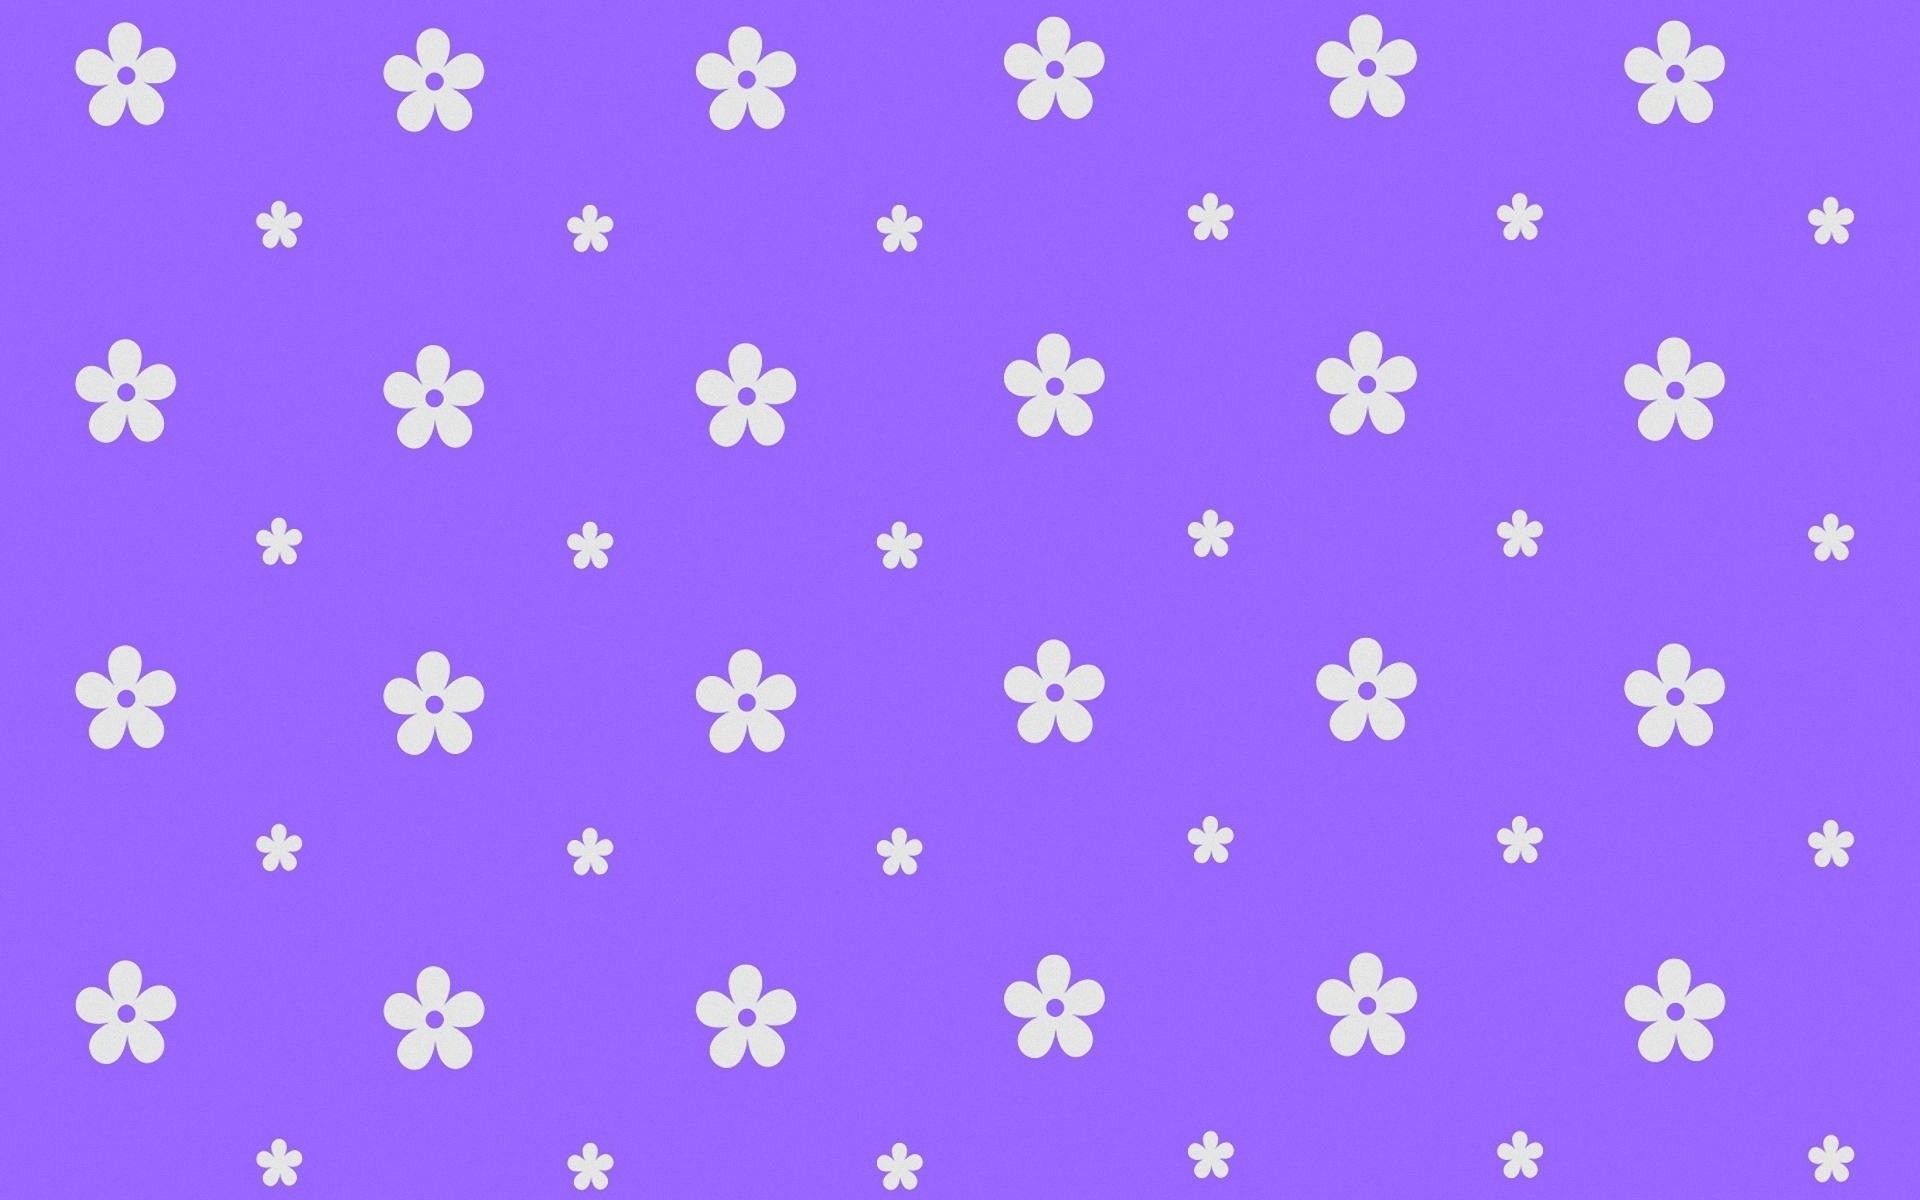 Cute purple desktop wallpapers